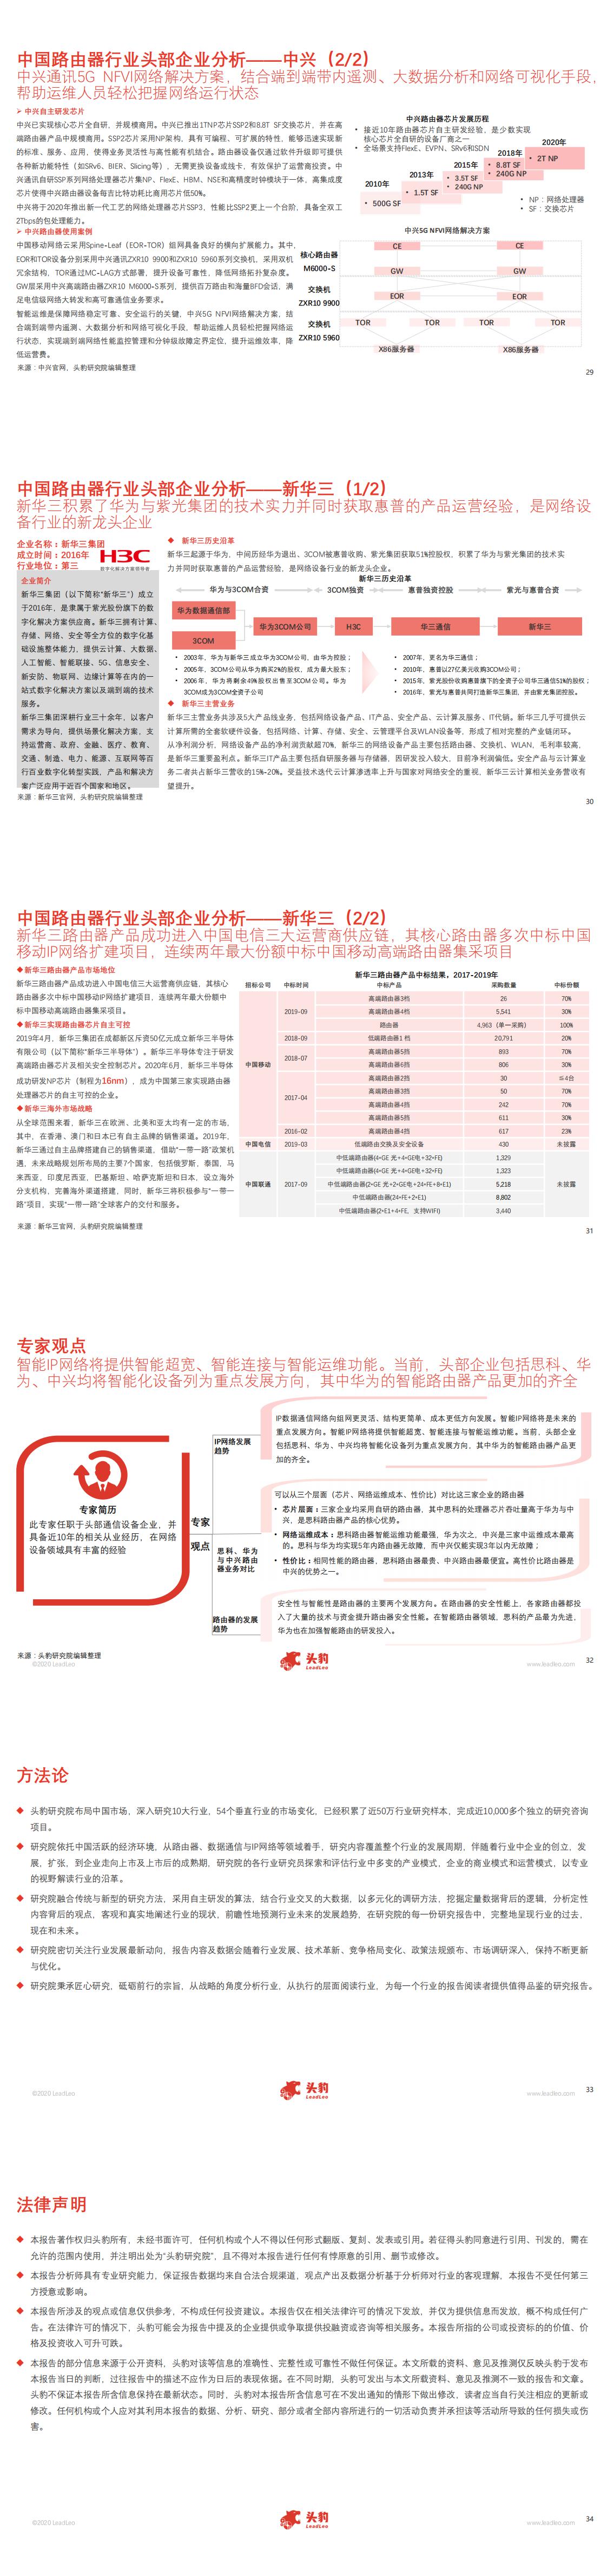 【头豹】2020年路由器在中国数据通信领域的应用概览_1.jpg